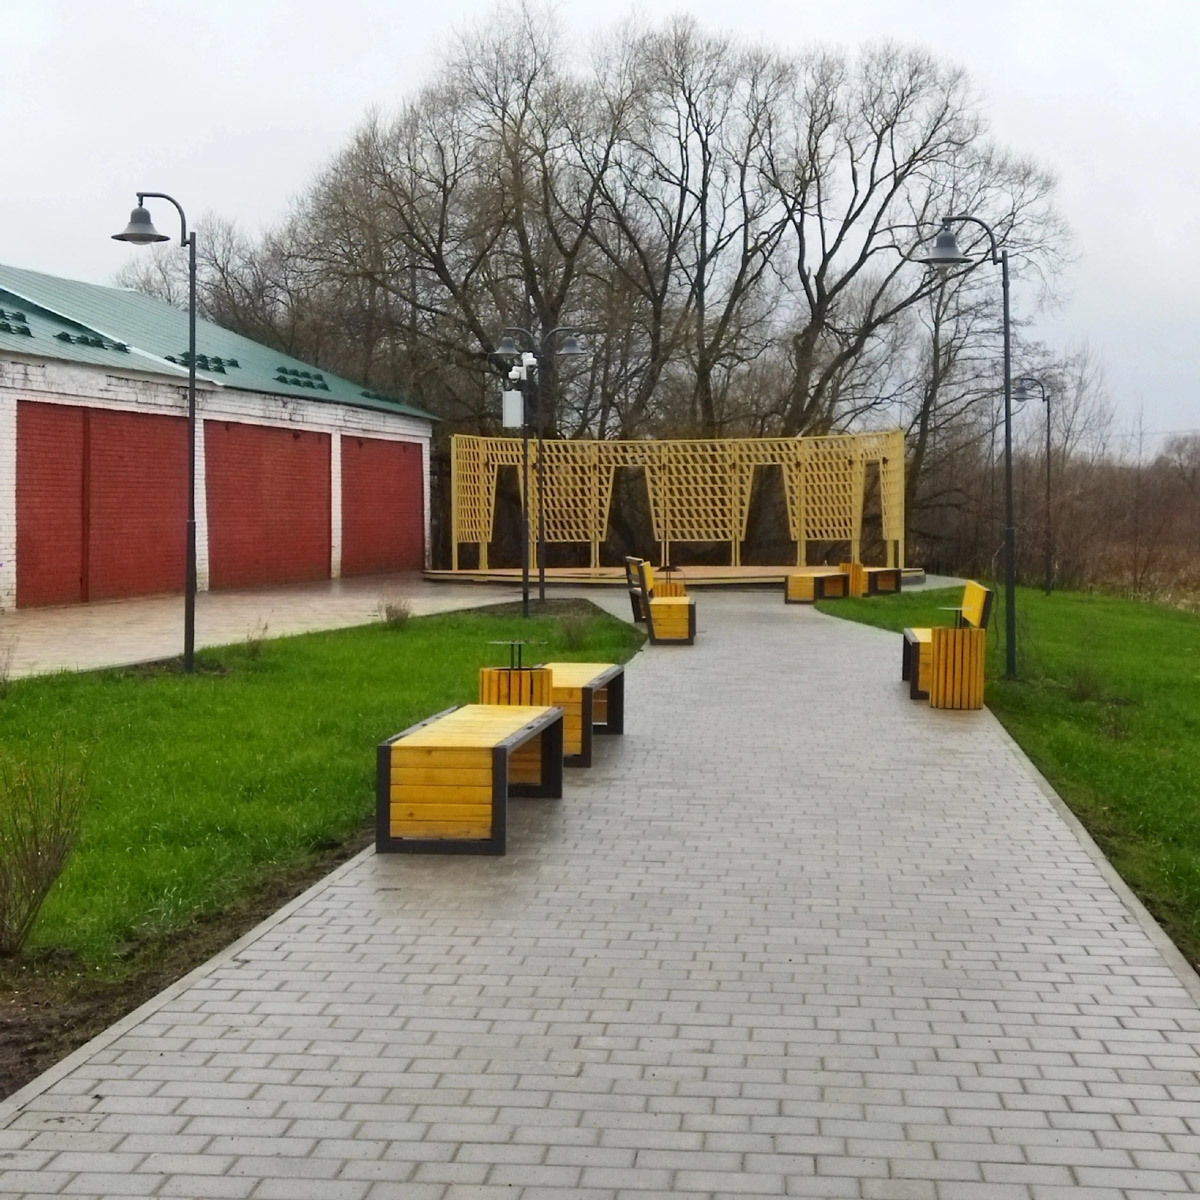 Обновление еще одного общественного пространства во Владимирской области подошло к концу. Показываем, какую набережную в Судогде успели сделать за полгода и 70 миллионов рублей.